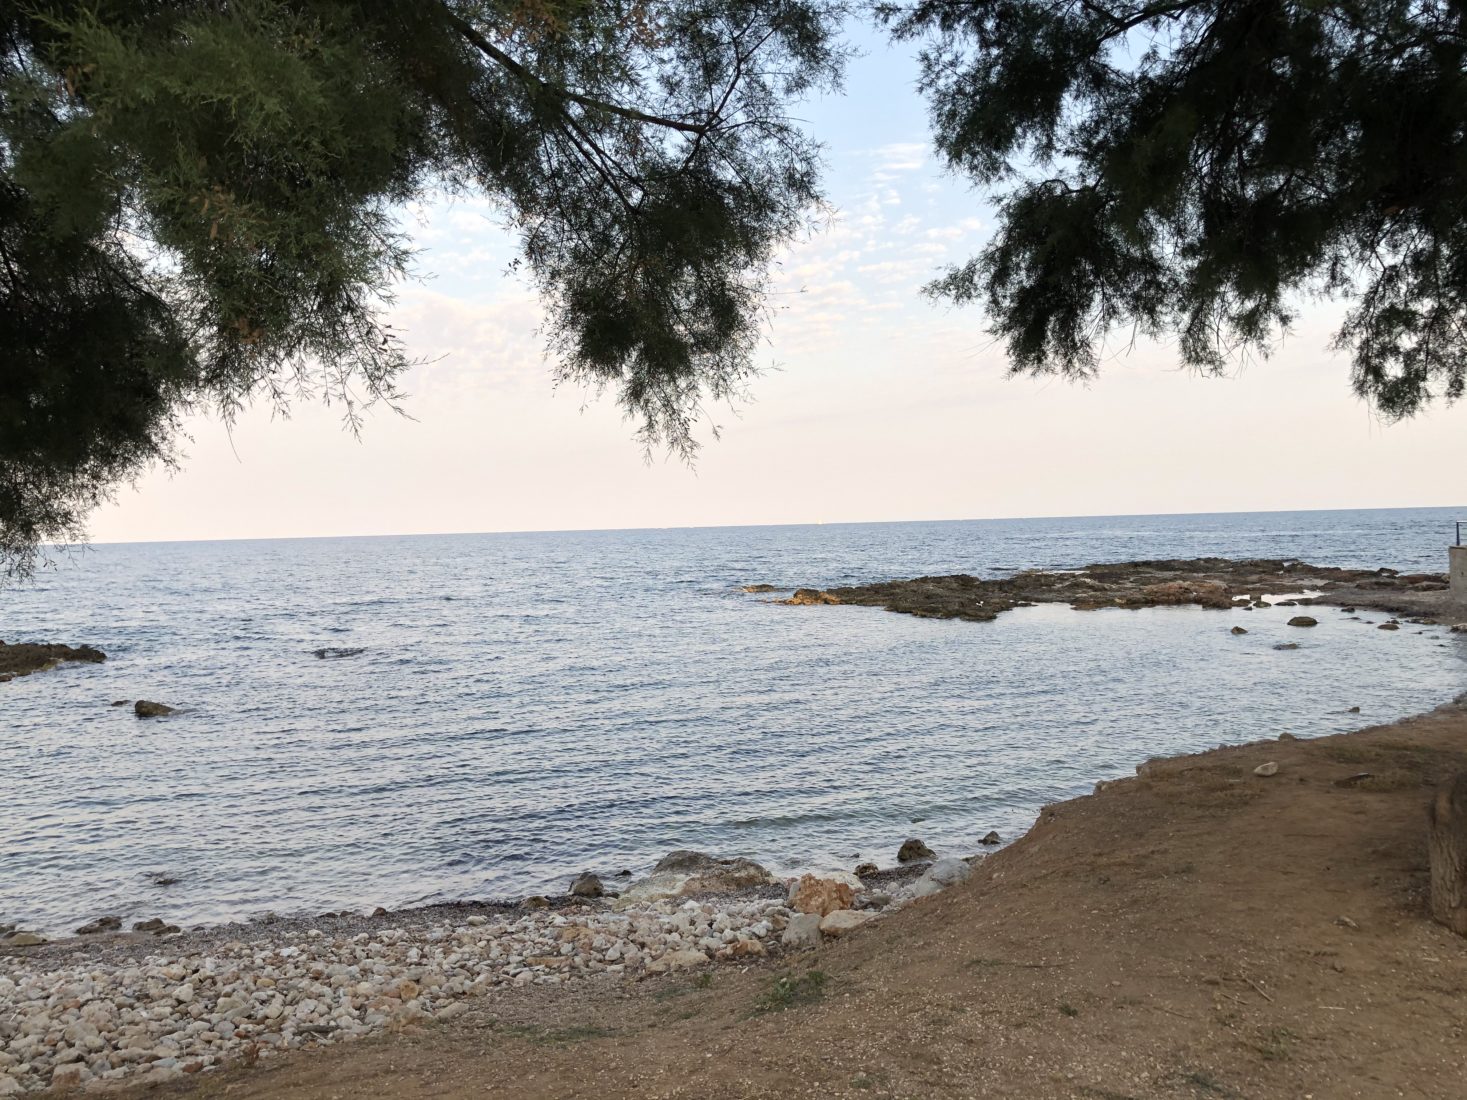 Ausblick aufs Meer in Cala Bona Mallorca